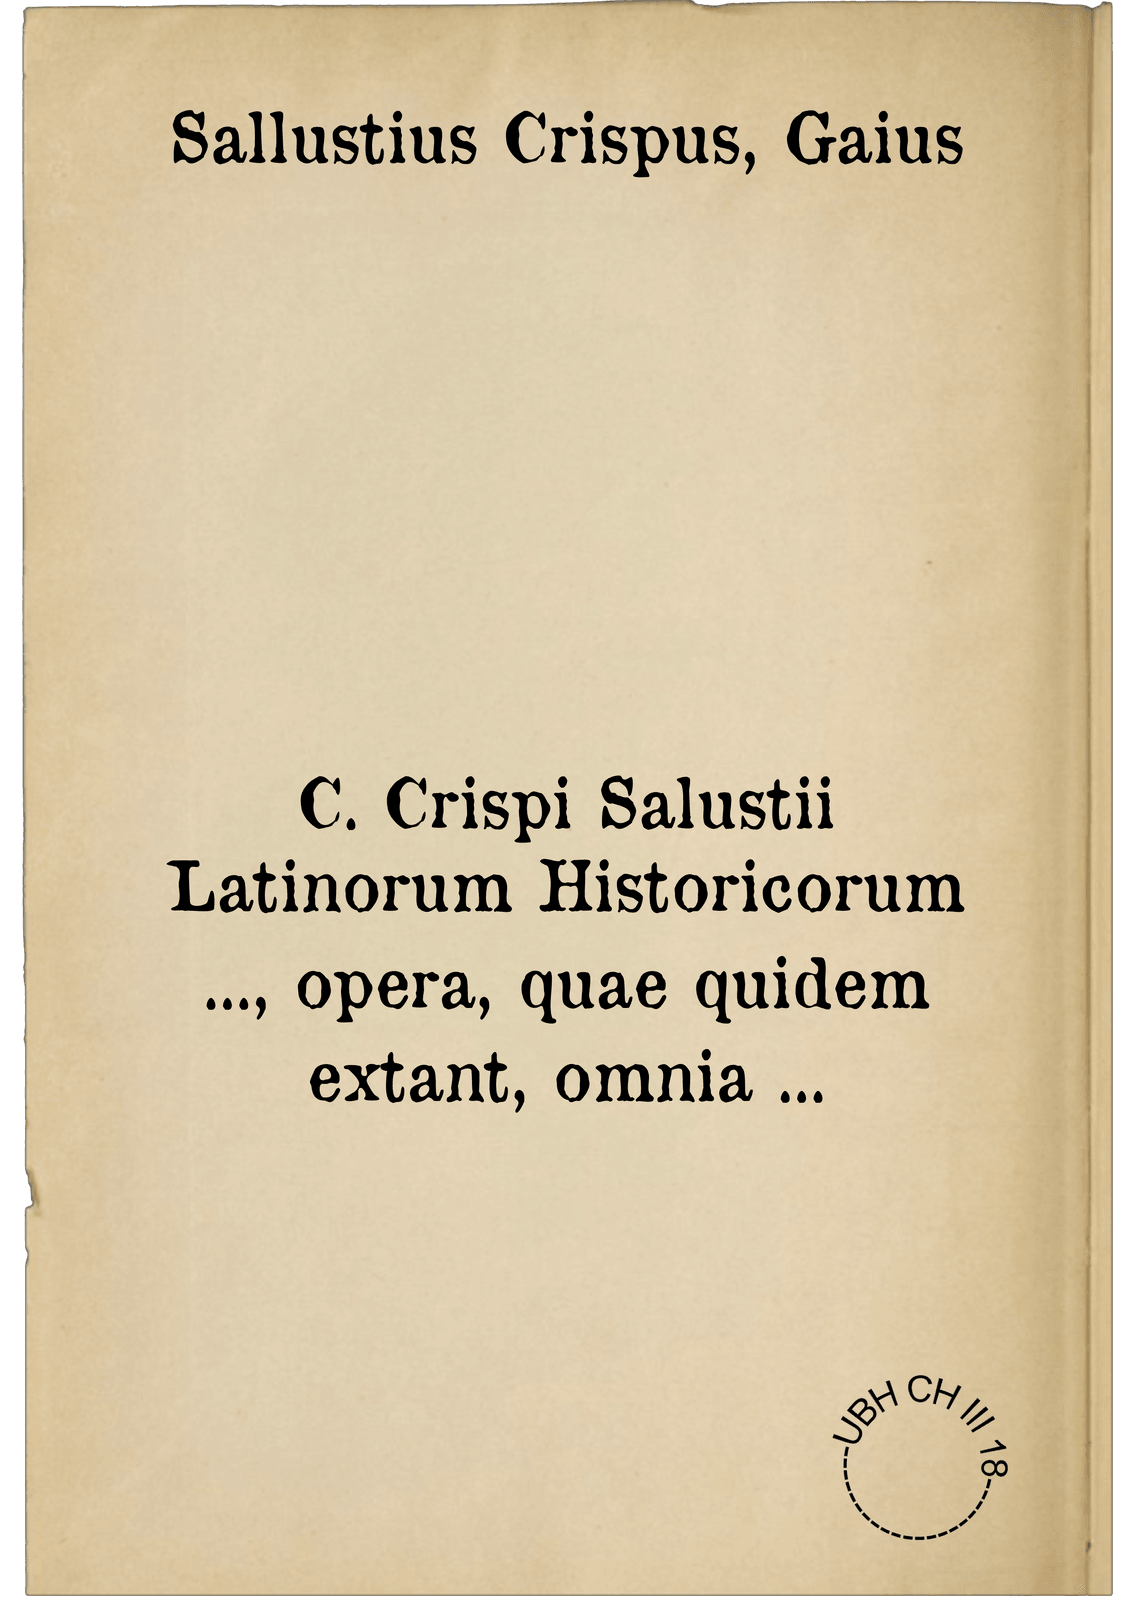 C. Crispi Salustii Latinorum Historicorum ..., opera, quae quidem extant, omnia ...